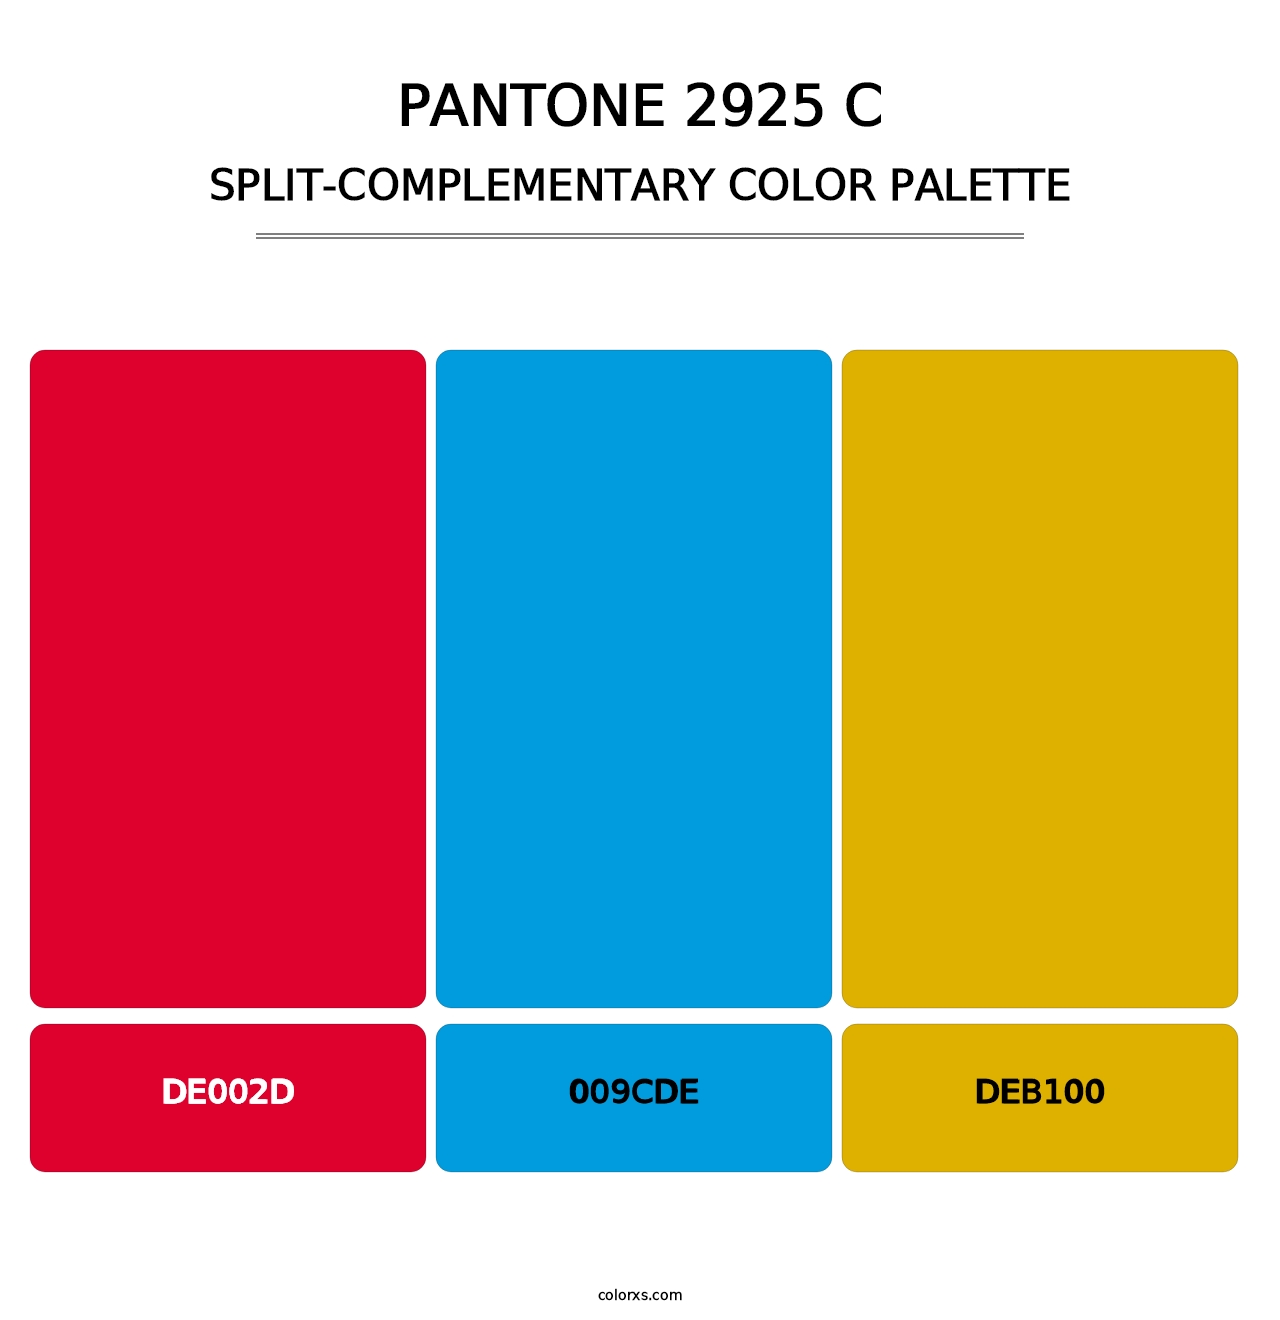 PANTONE 2925 C - Split-Complementary Color Palette